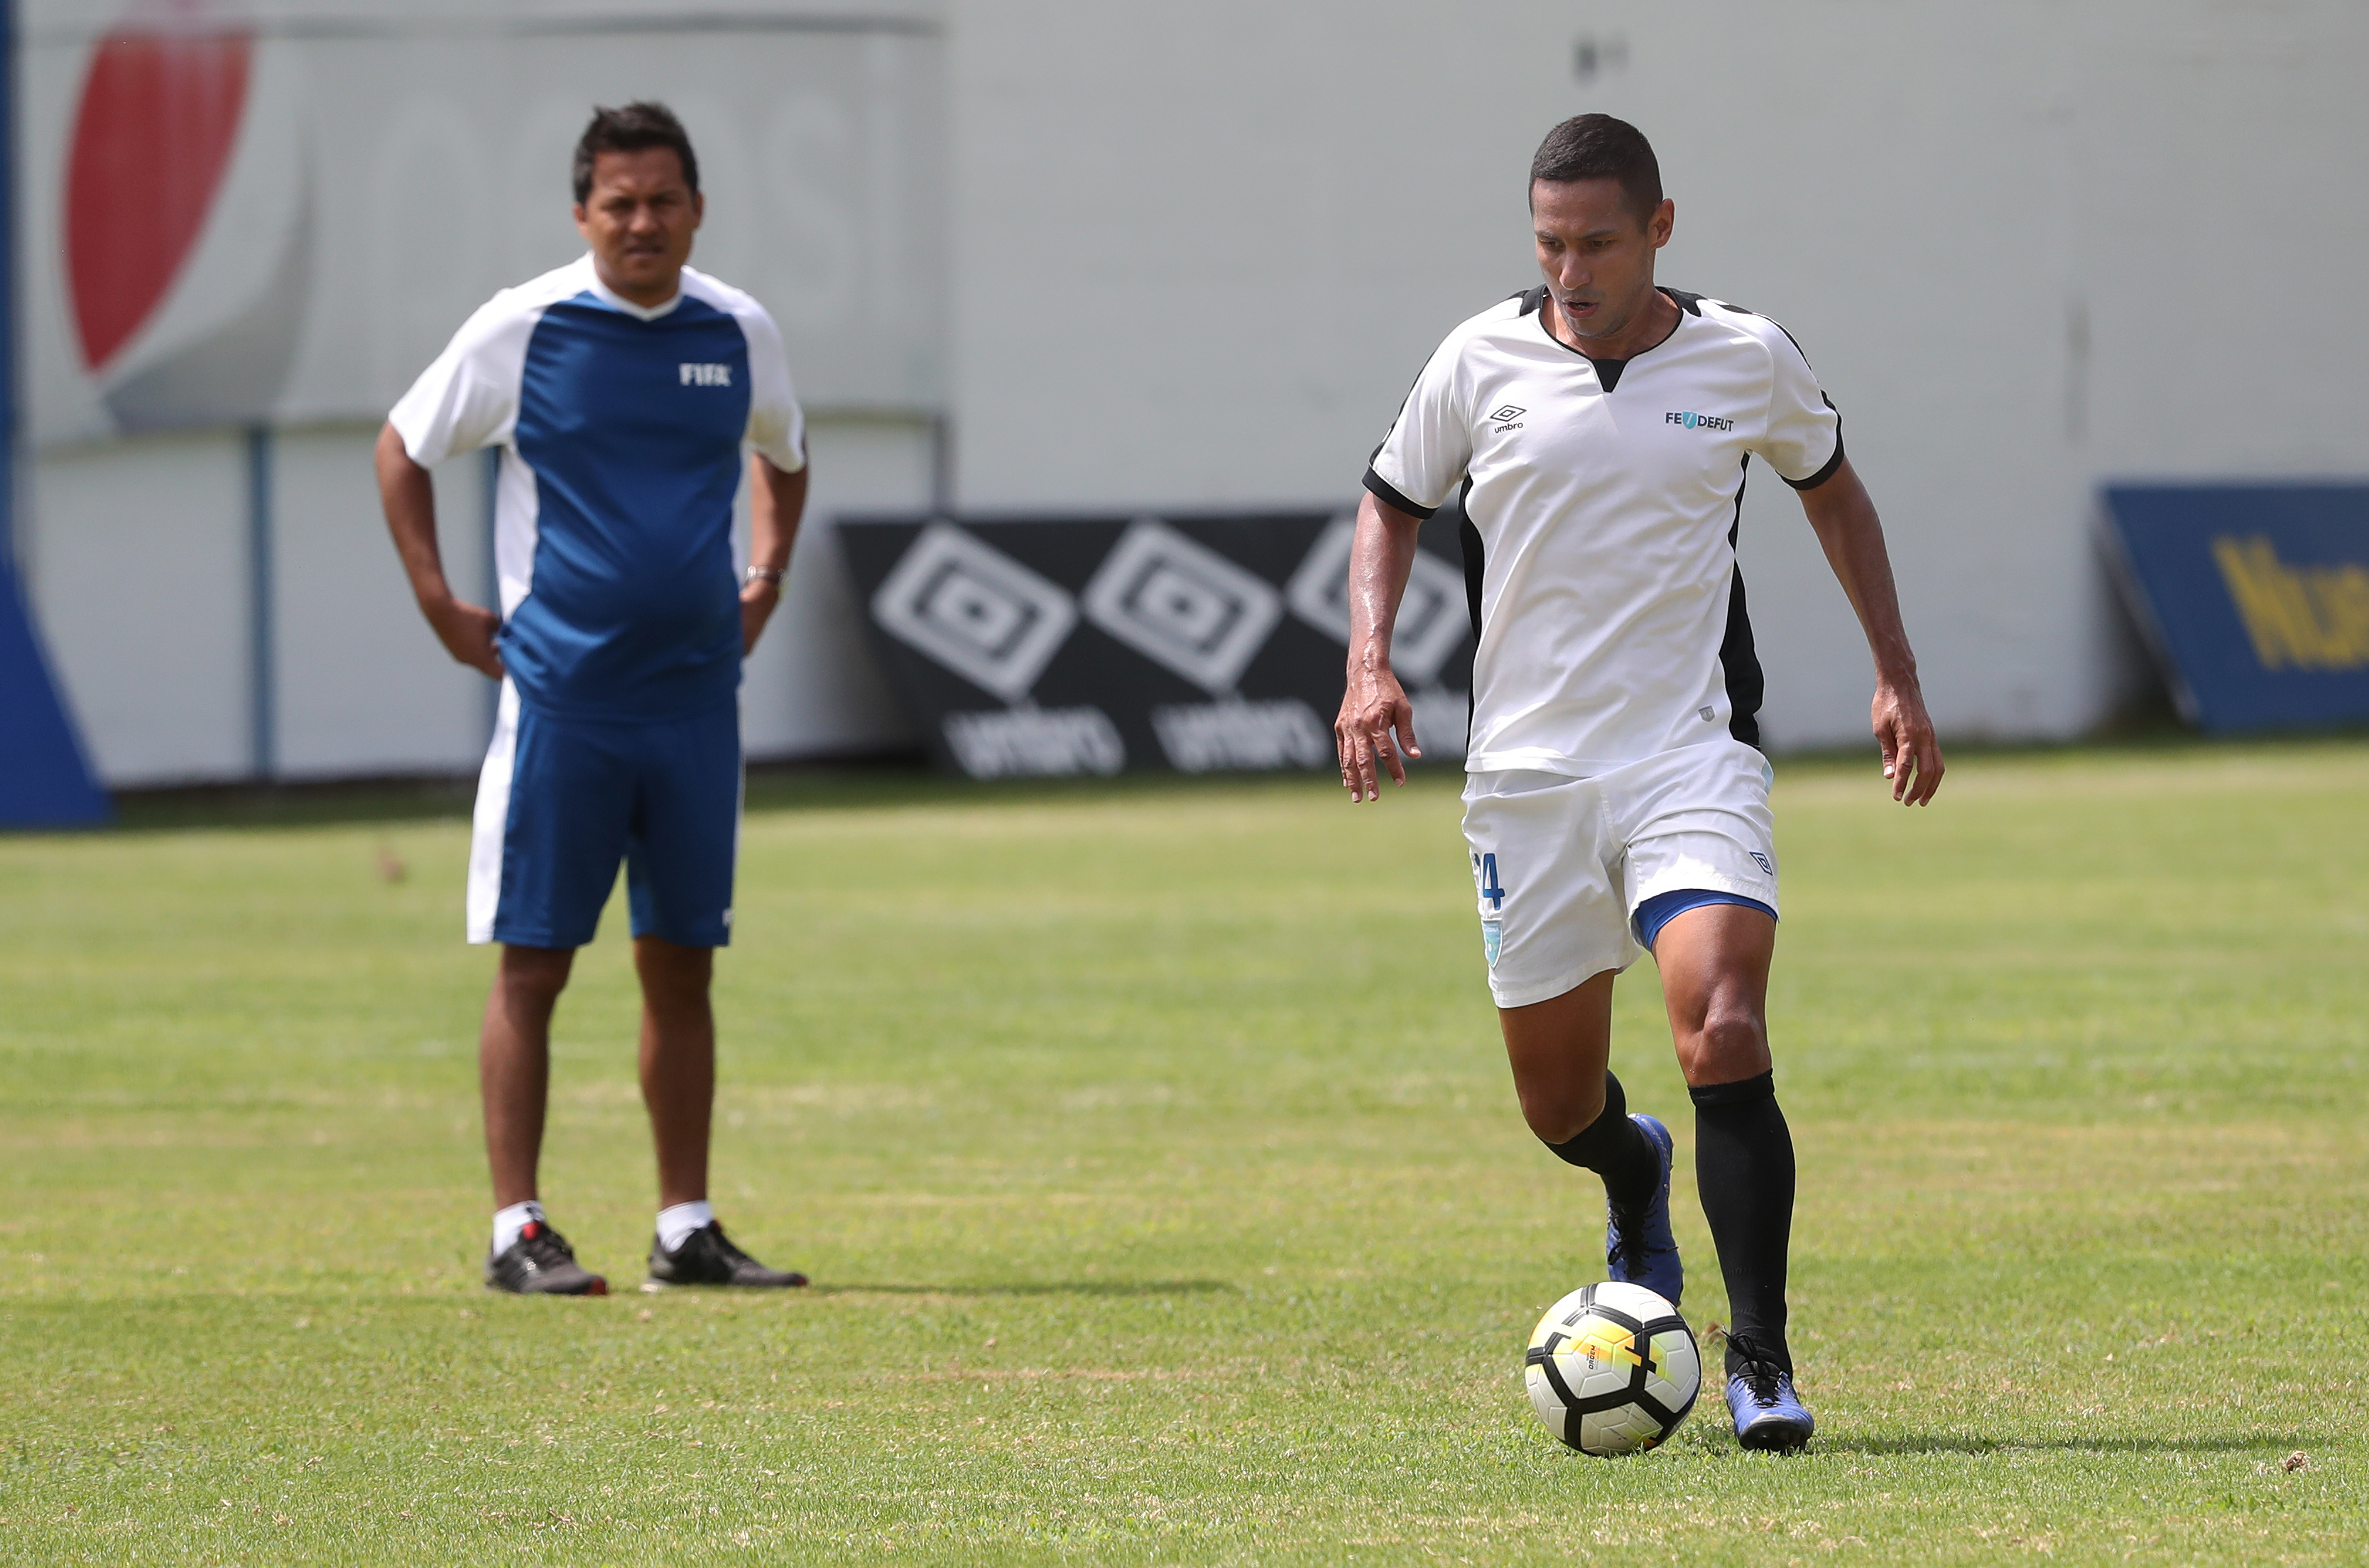 El defensa Rodolfo Rafael González, participa con un entrenamiento de la Selección Nacional el martes 4-6-2019 en el Proyecto Goal, como parte de la preparación para disputar un amistoso contra Paraguay. (Foto Prensa Libre: Francisco Sánchez).